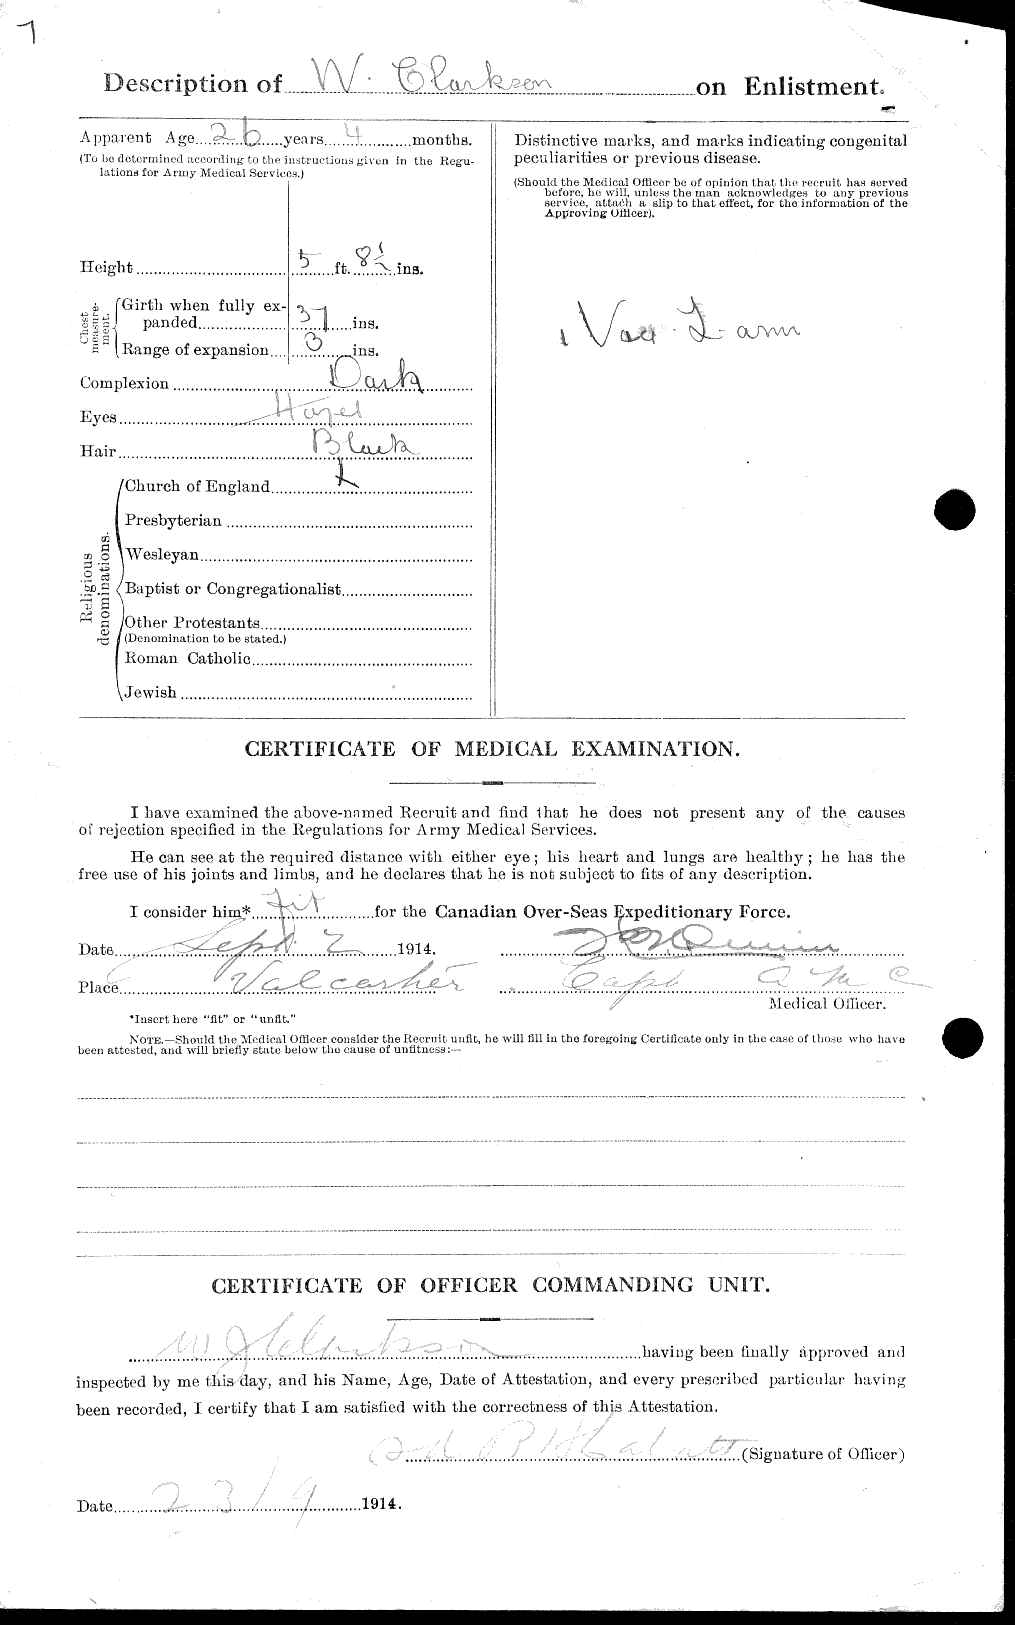 Dossiers du Personnel de la Première Guerre mondiale - CEC 019025b